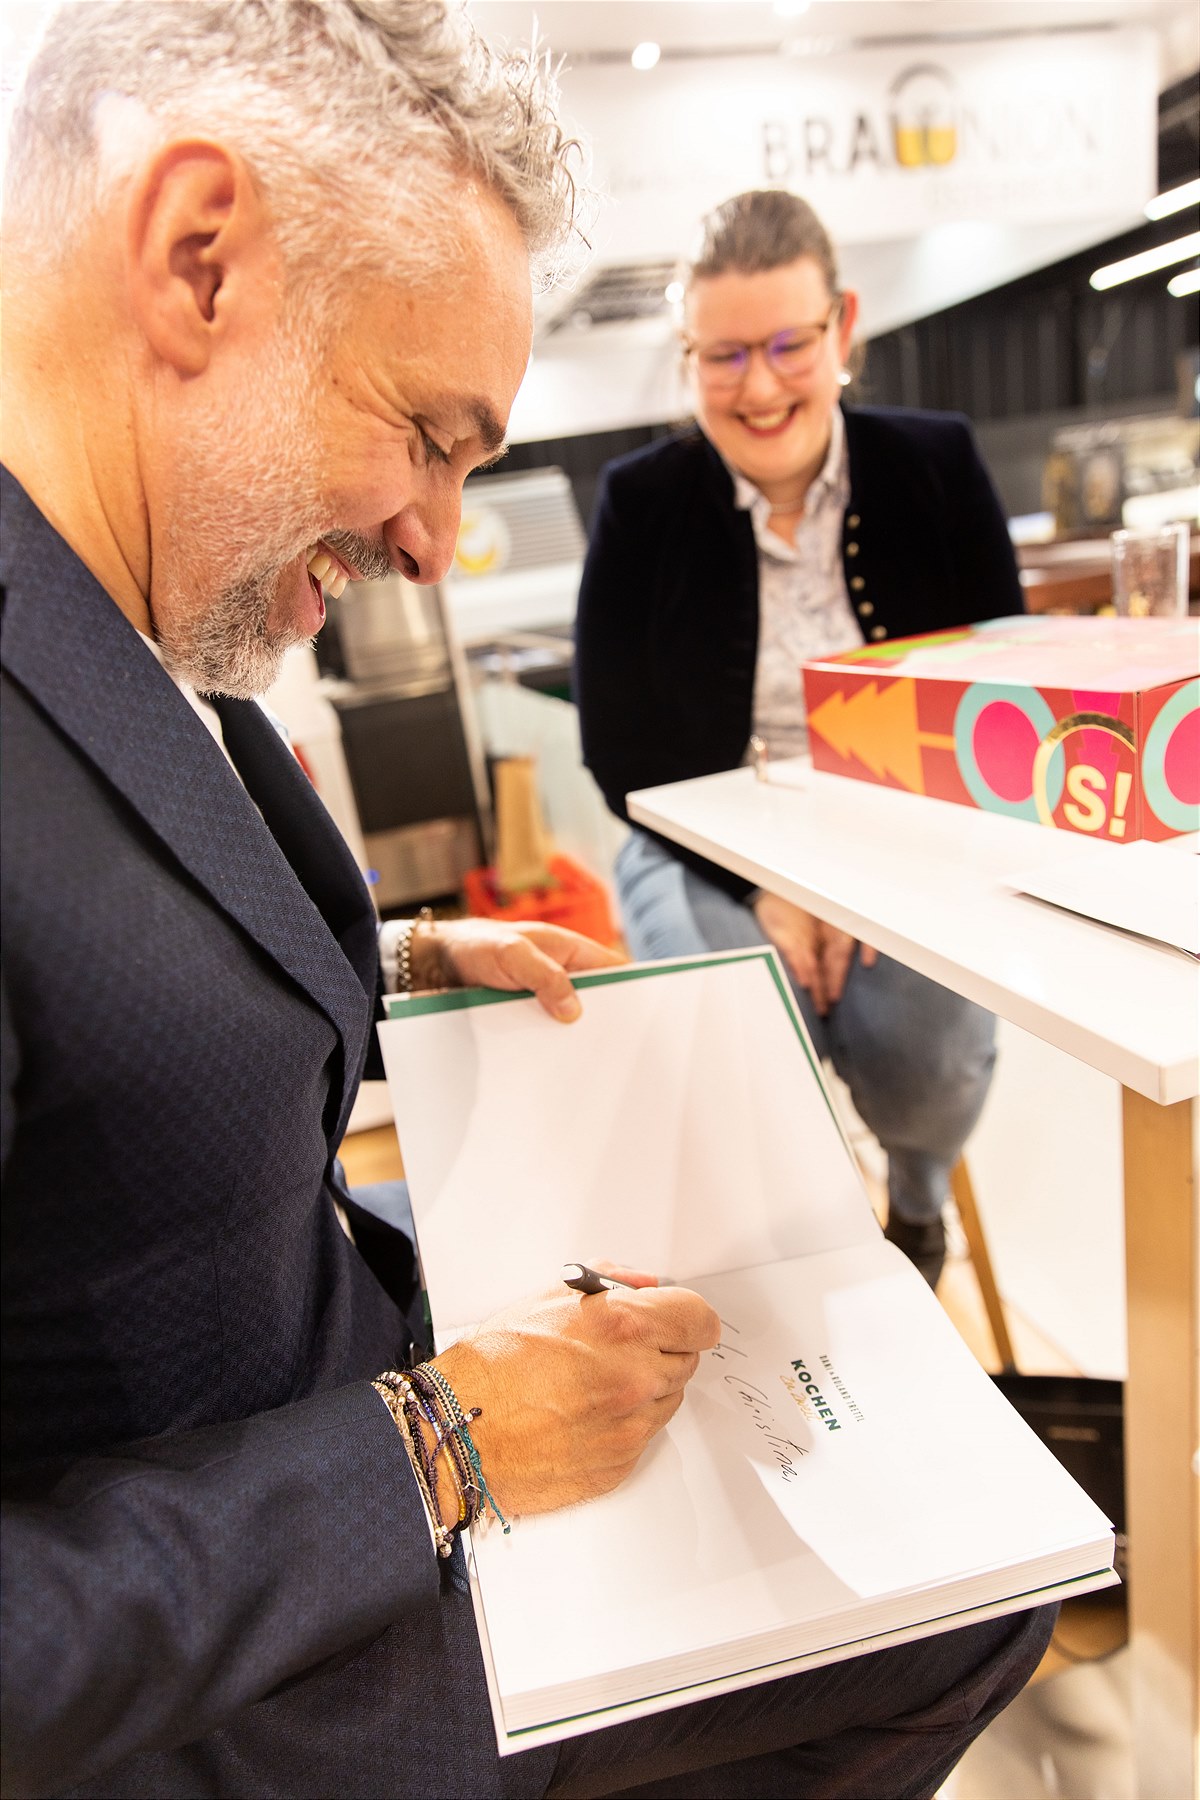 Roland Trettl am EUROGAST Messestand beim Signieren seines neuen Kochbuchs